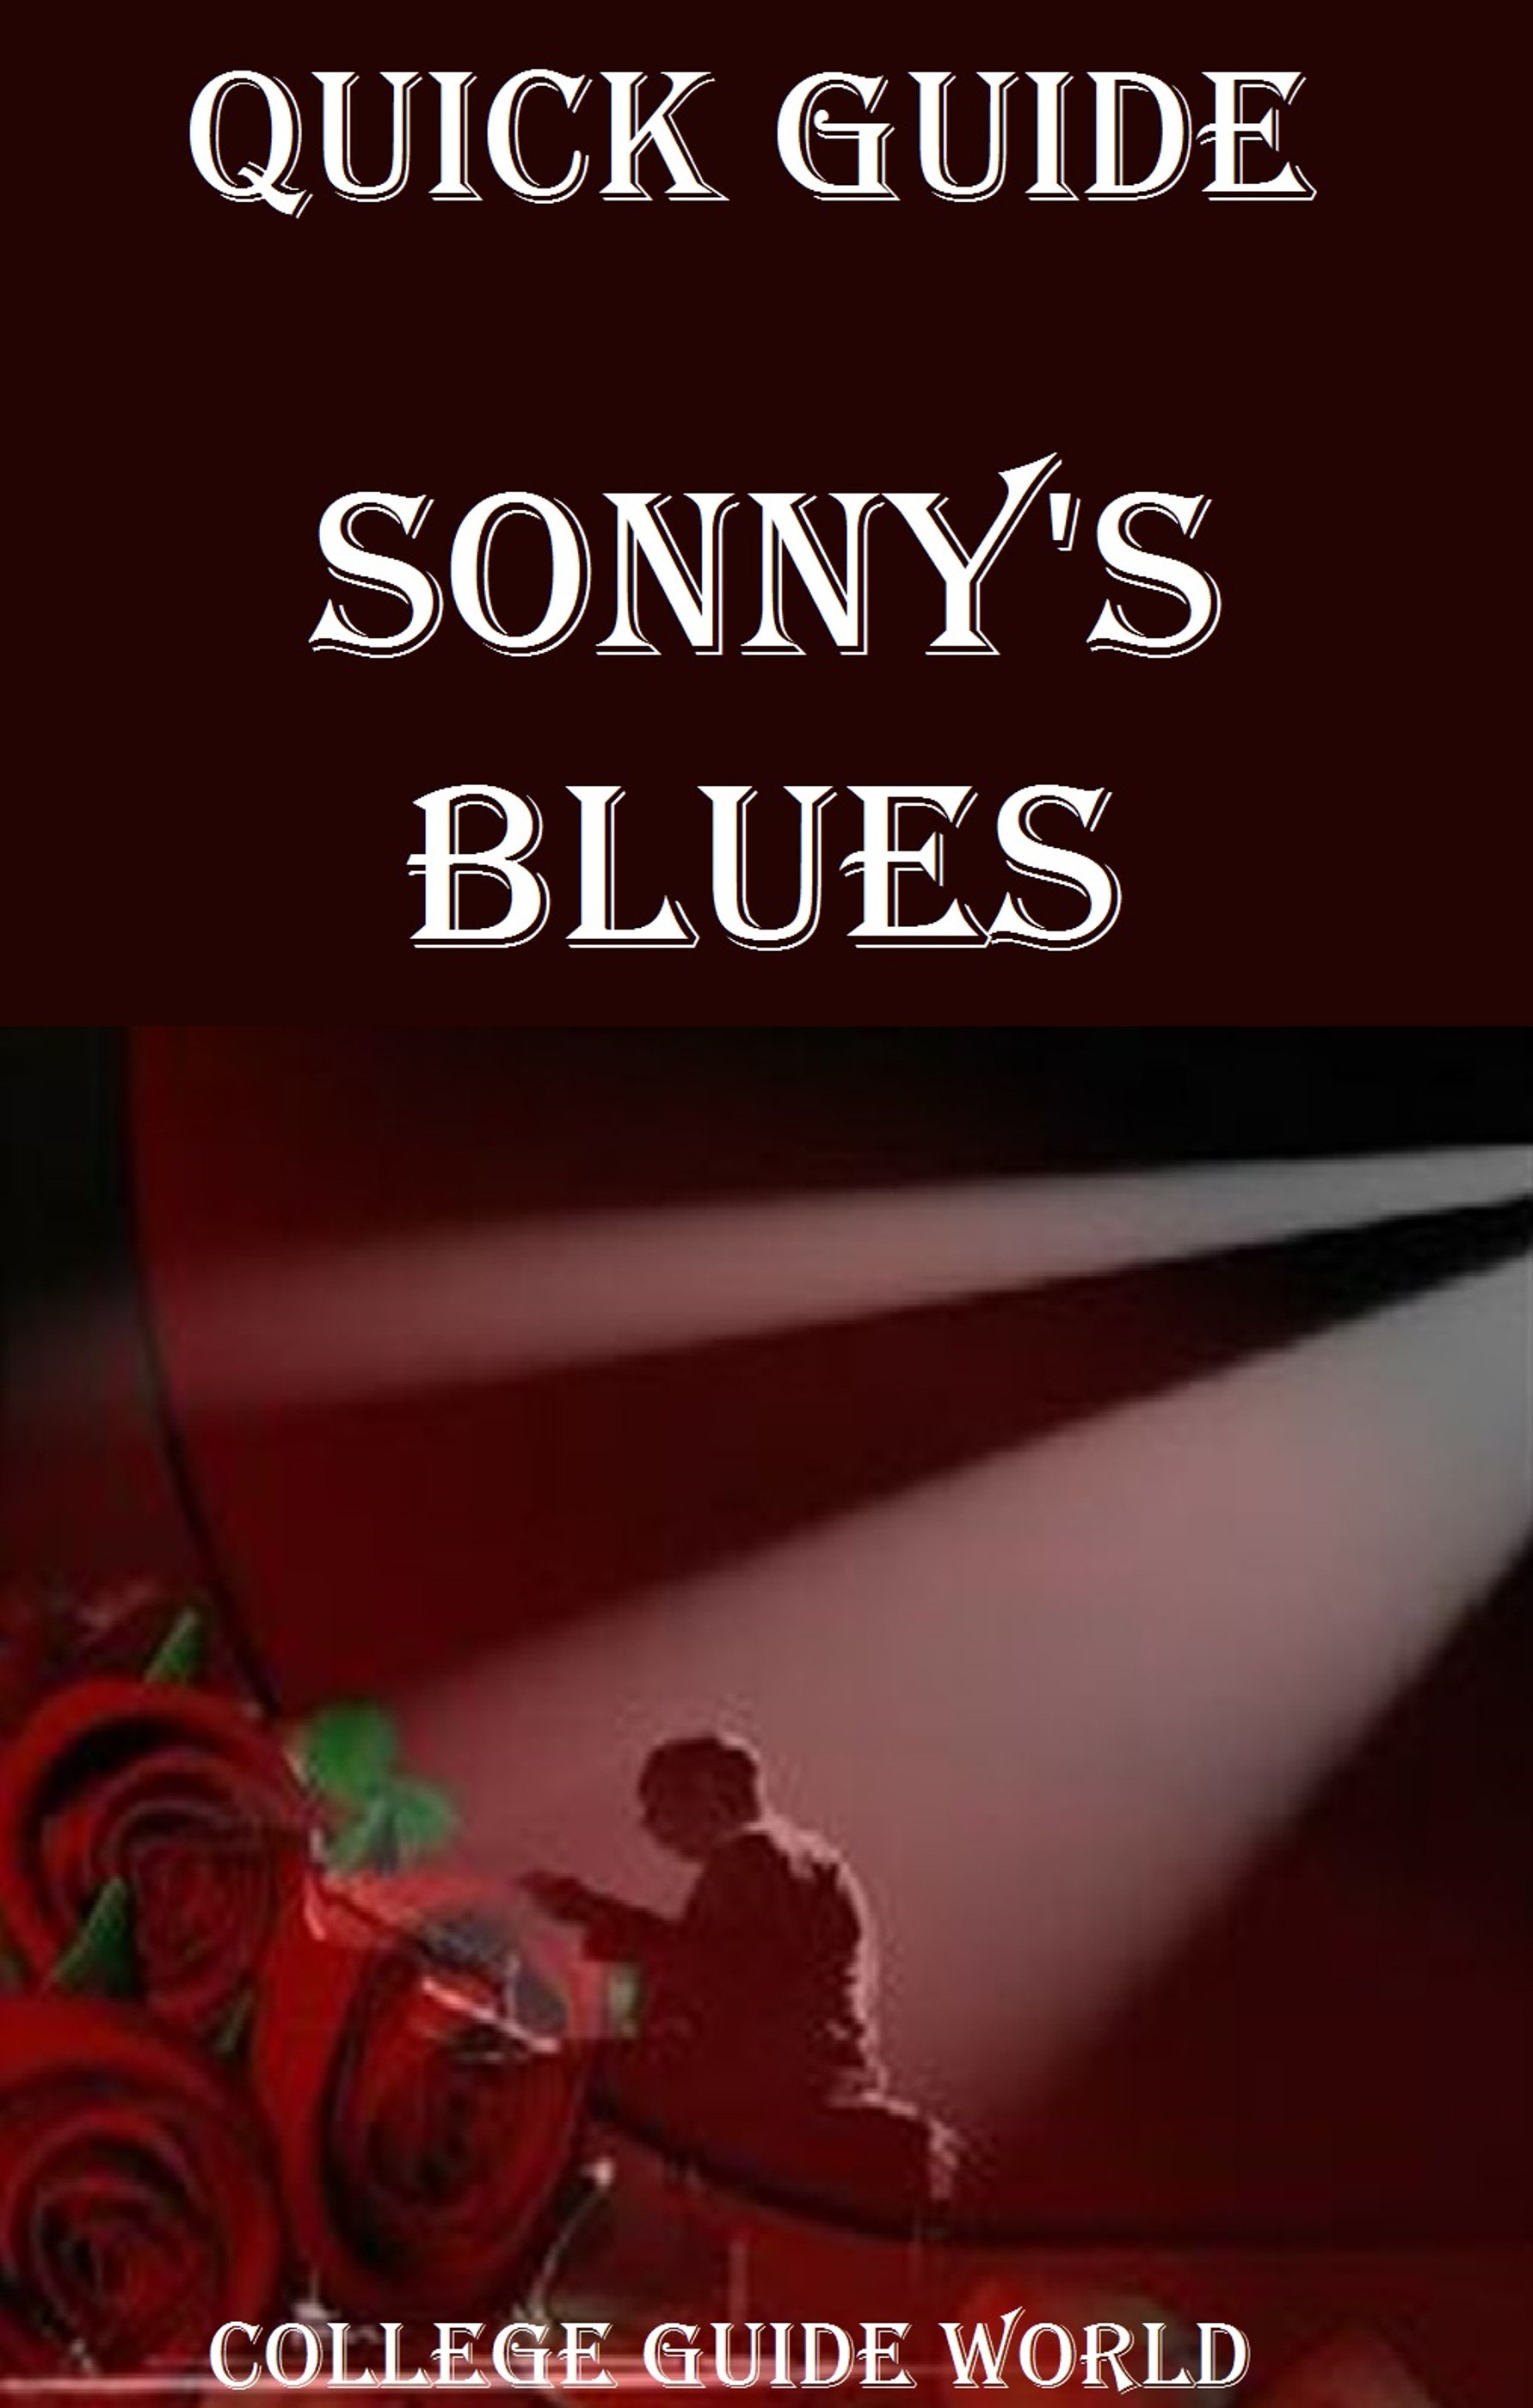 summary of sonnys blues